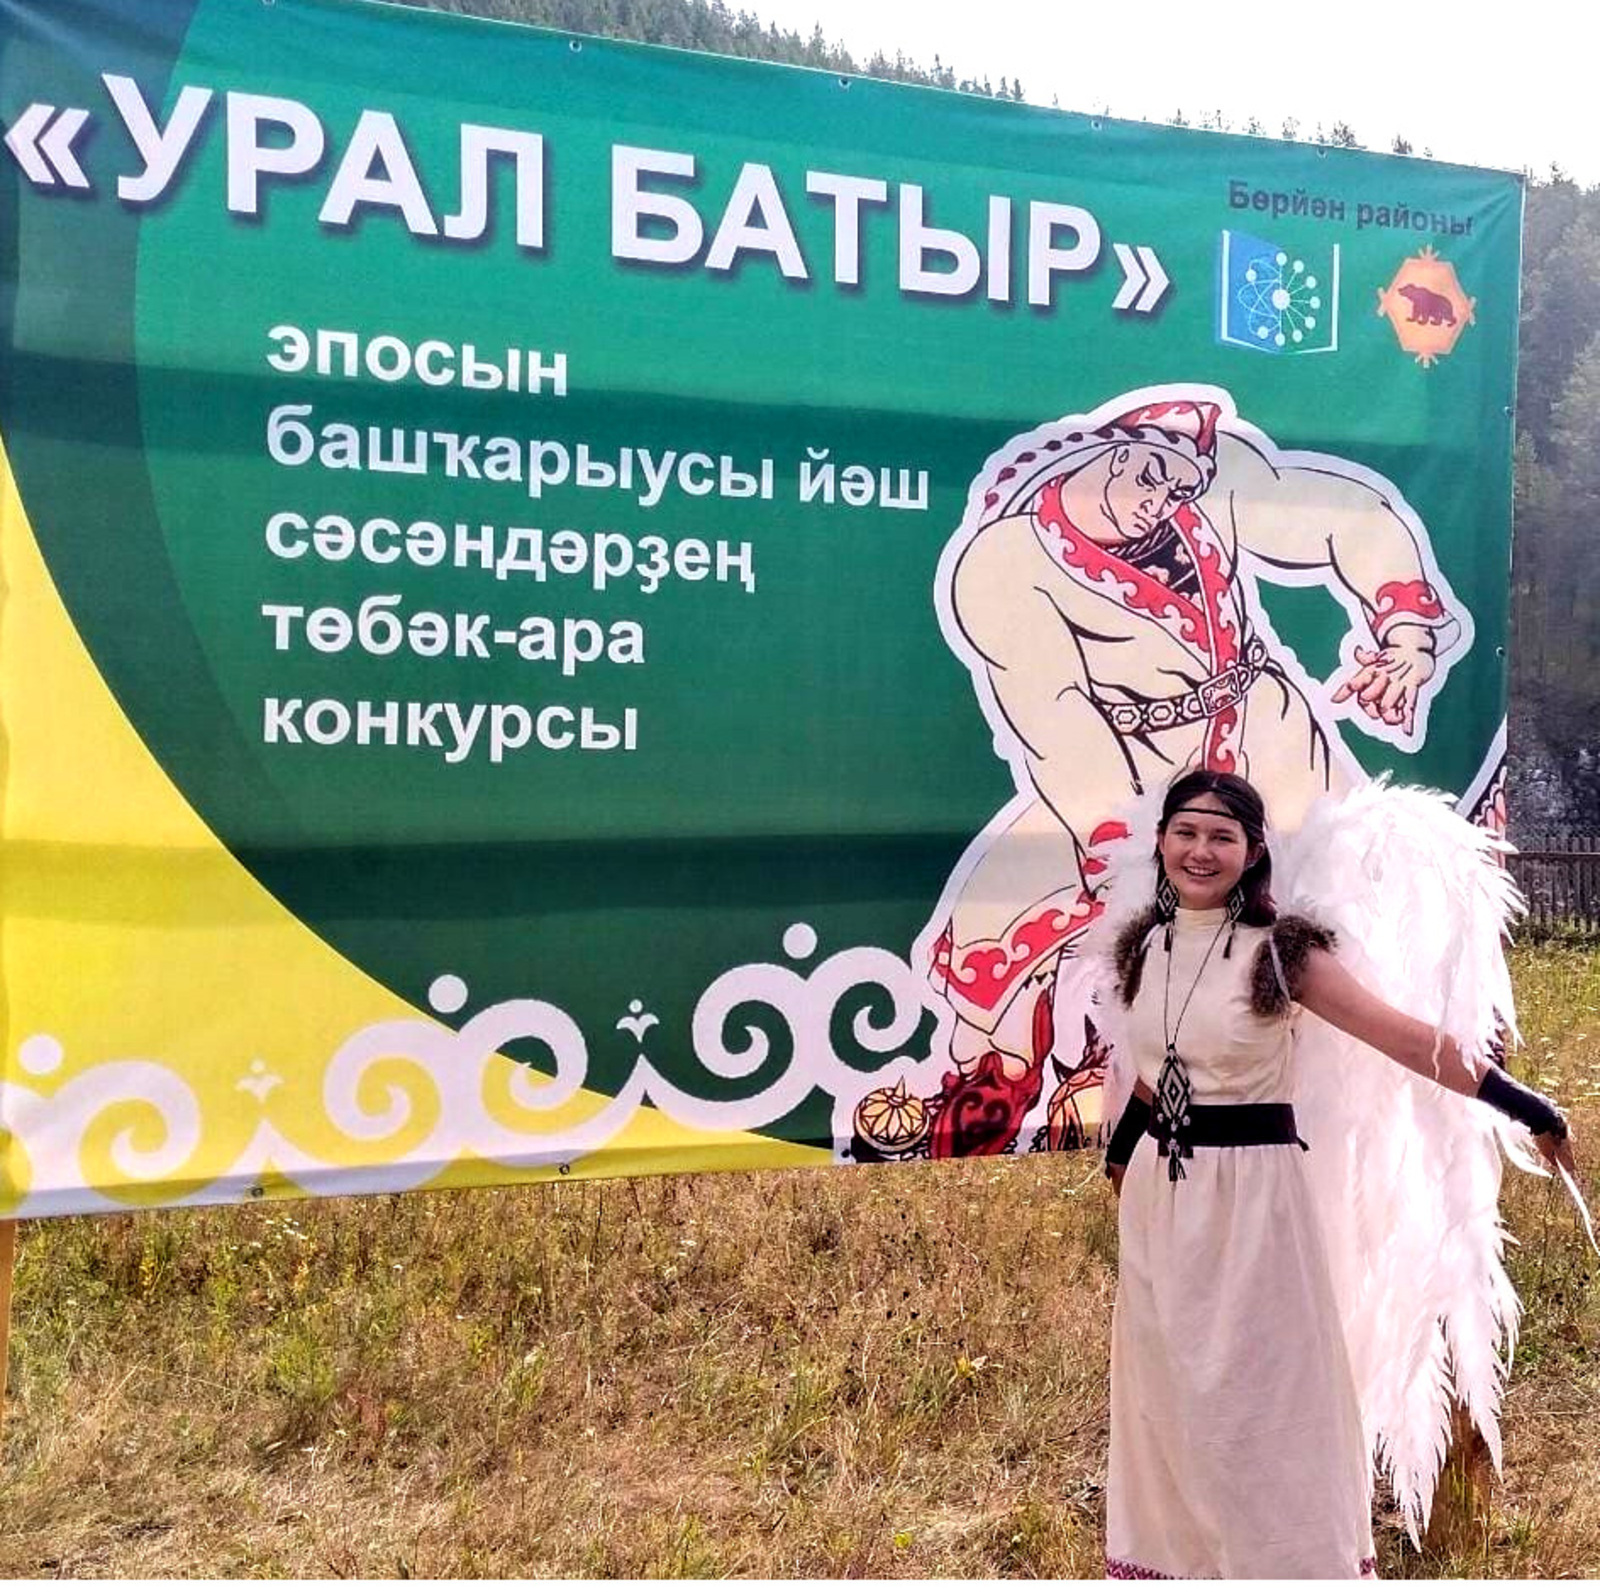 В Башкирии проходит конкурс юных исполнителей эпоса «Урал батыр»